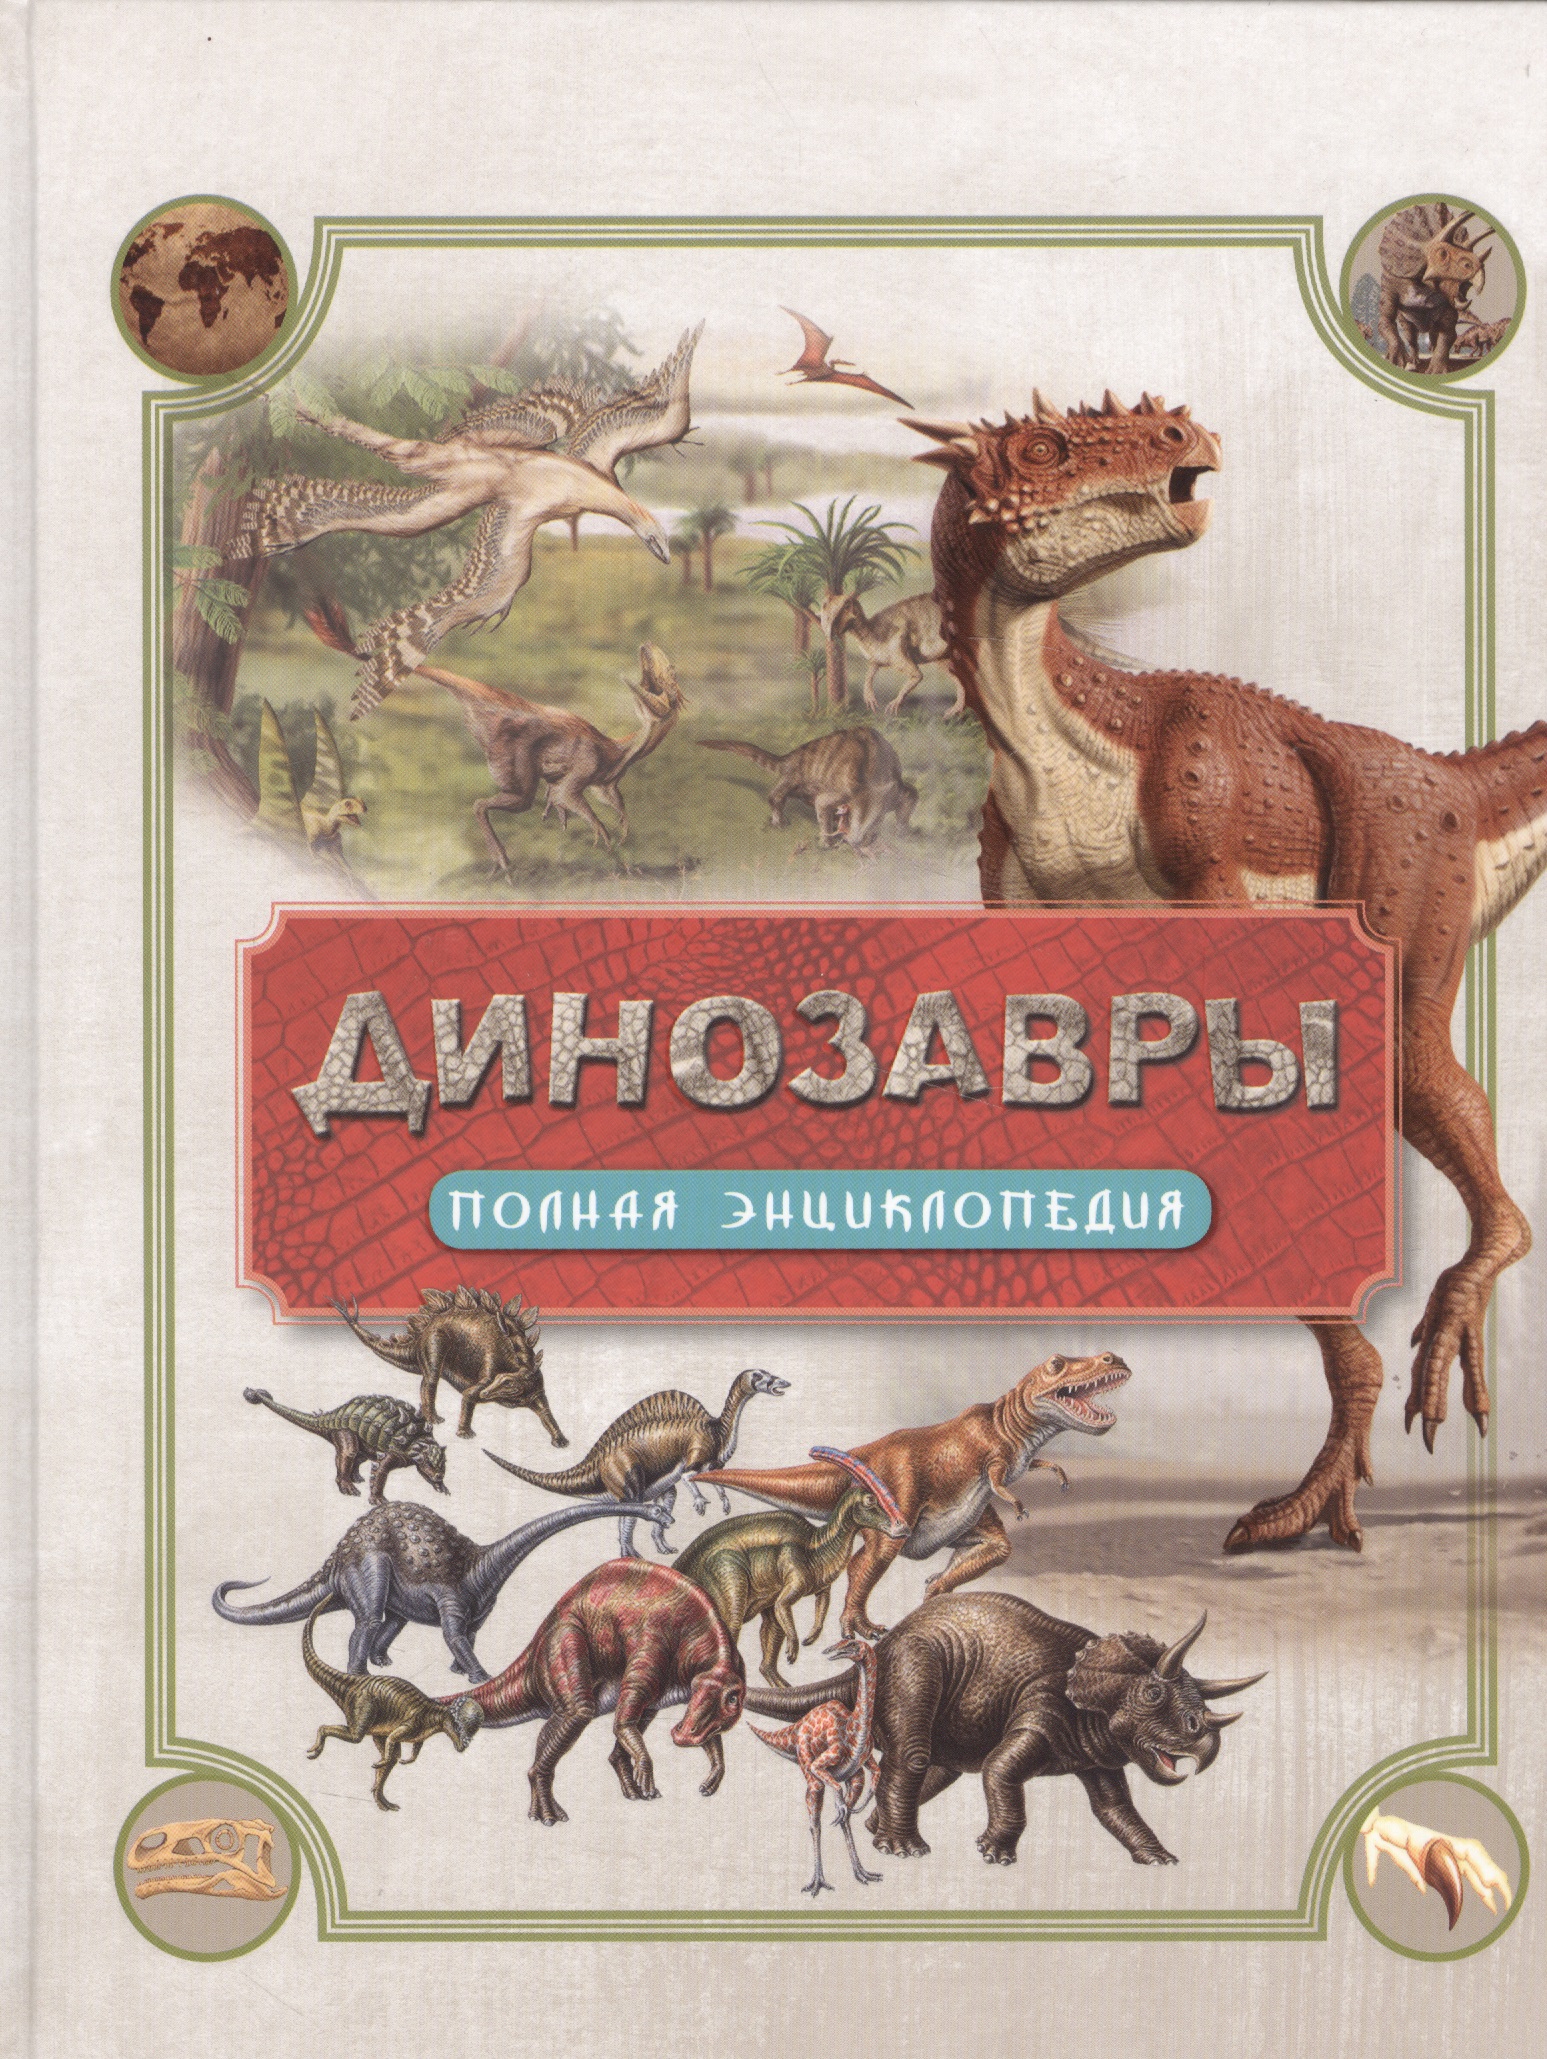 Динозавры. Полная энциклопедия вудворт джон динозавры самая полная современная энциклопедия